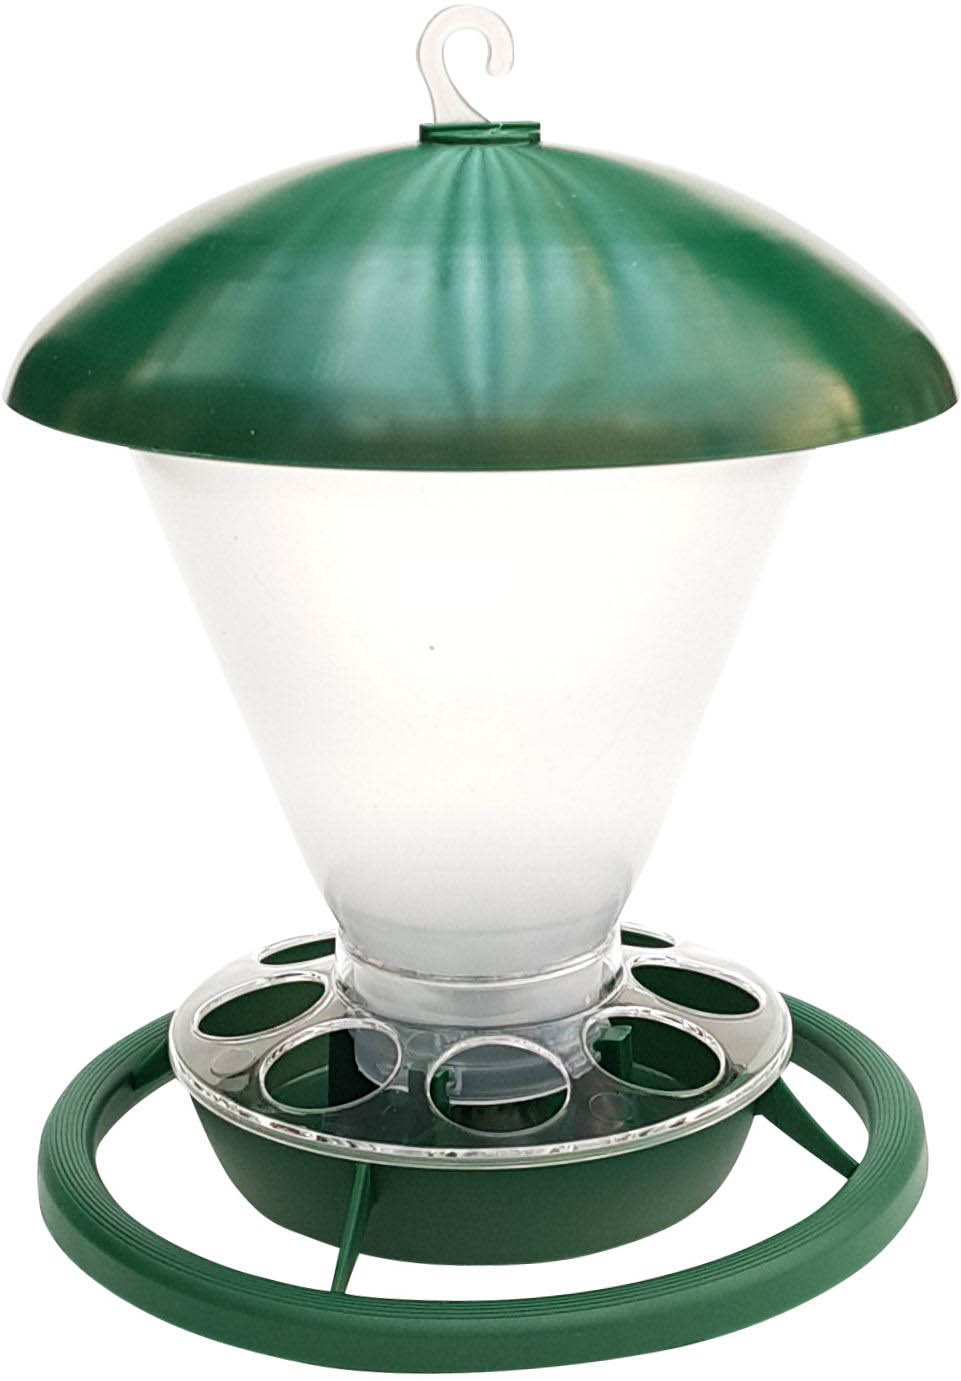 Ampel grün/transparent - External comber feeder